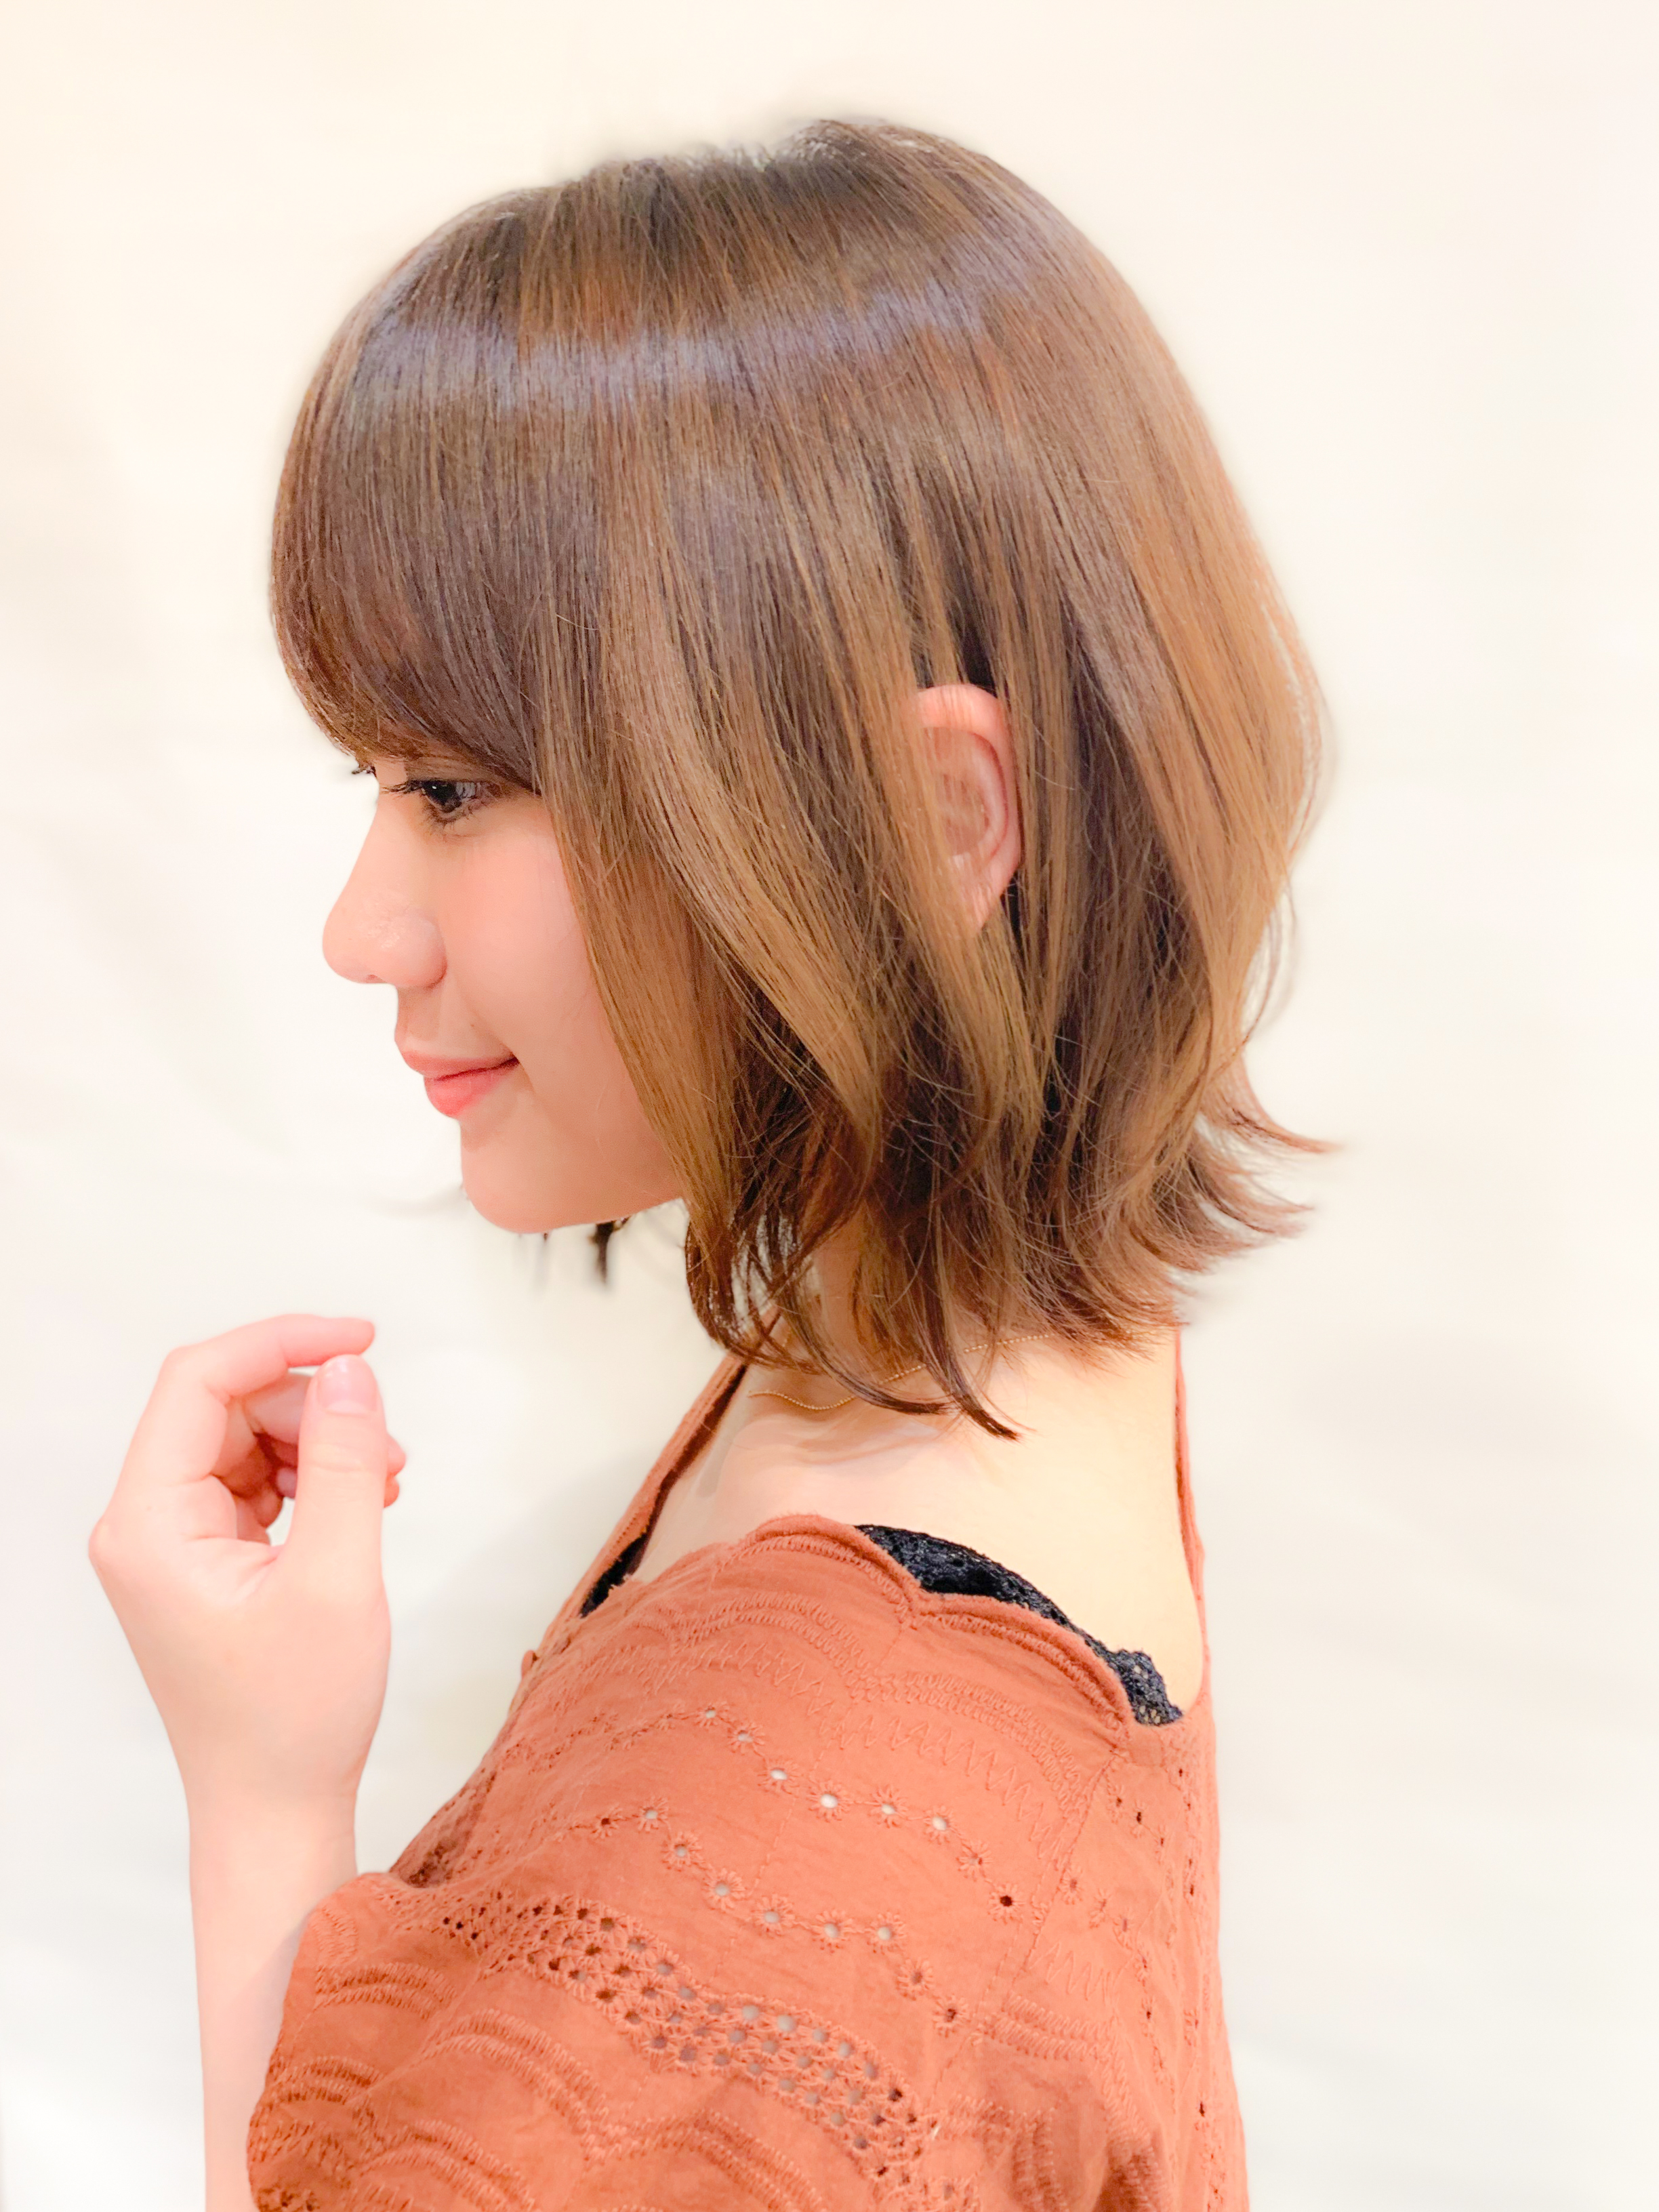 低温デジタルパーマとは メリットとおすすめの髪型をご紹介 似合わせカットが上手い東京の美容師 美容室minx銀座 蛭田のブログ